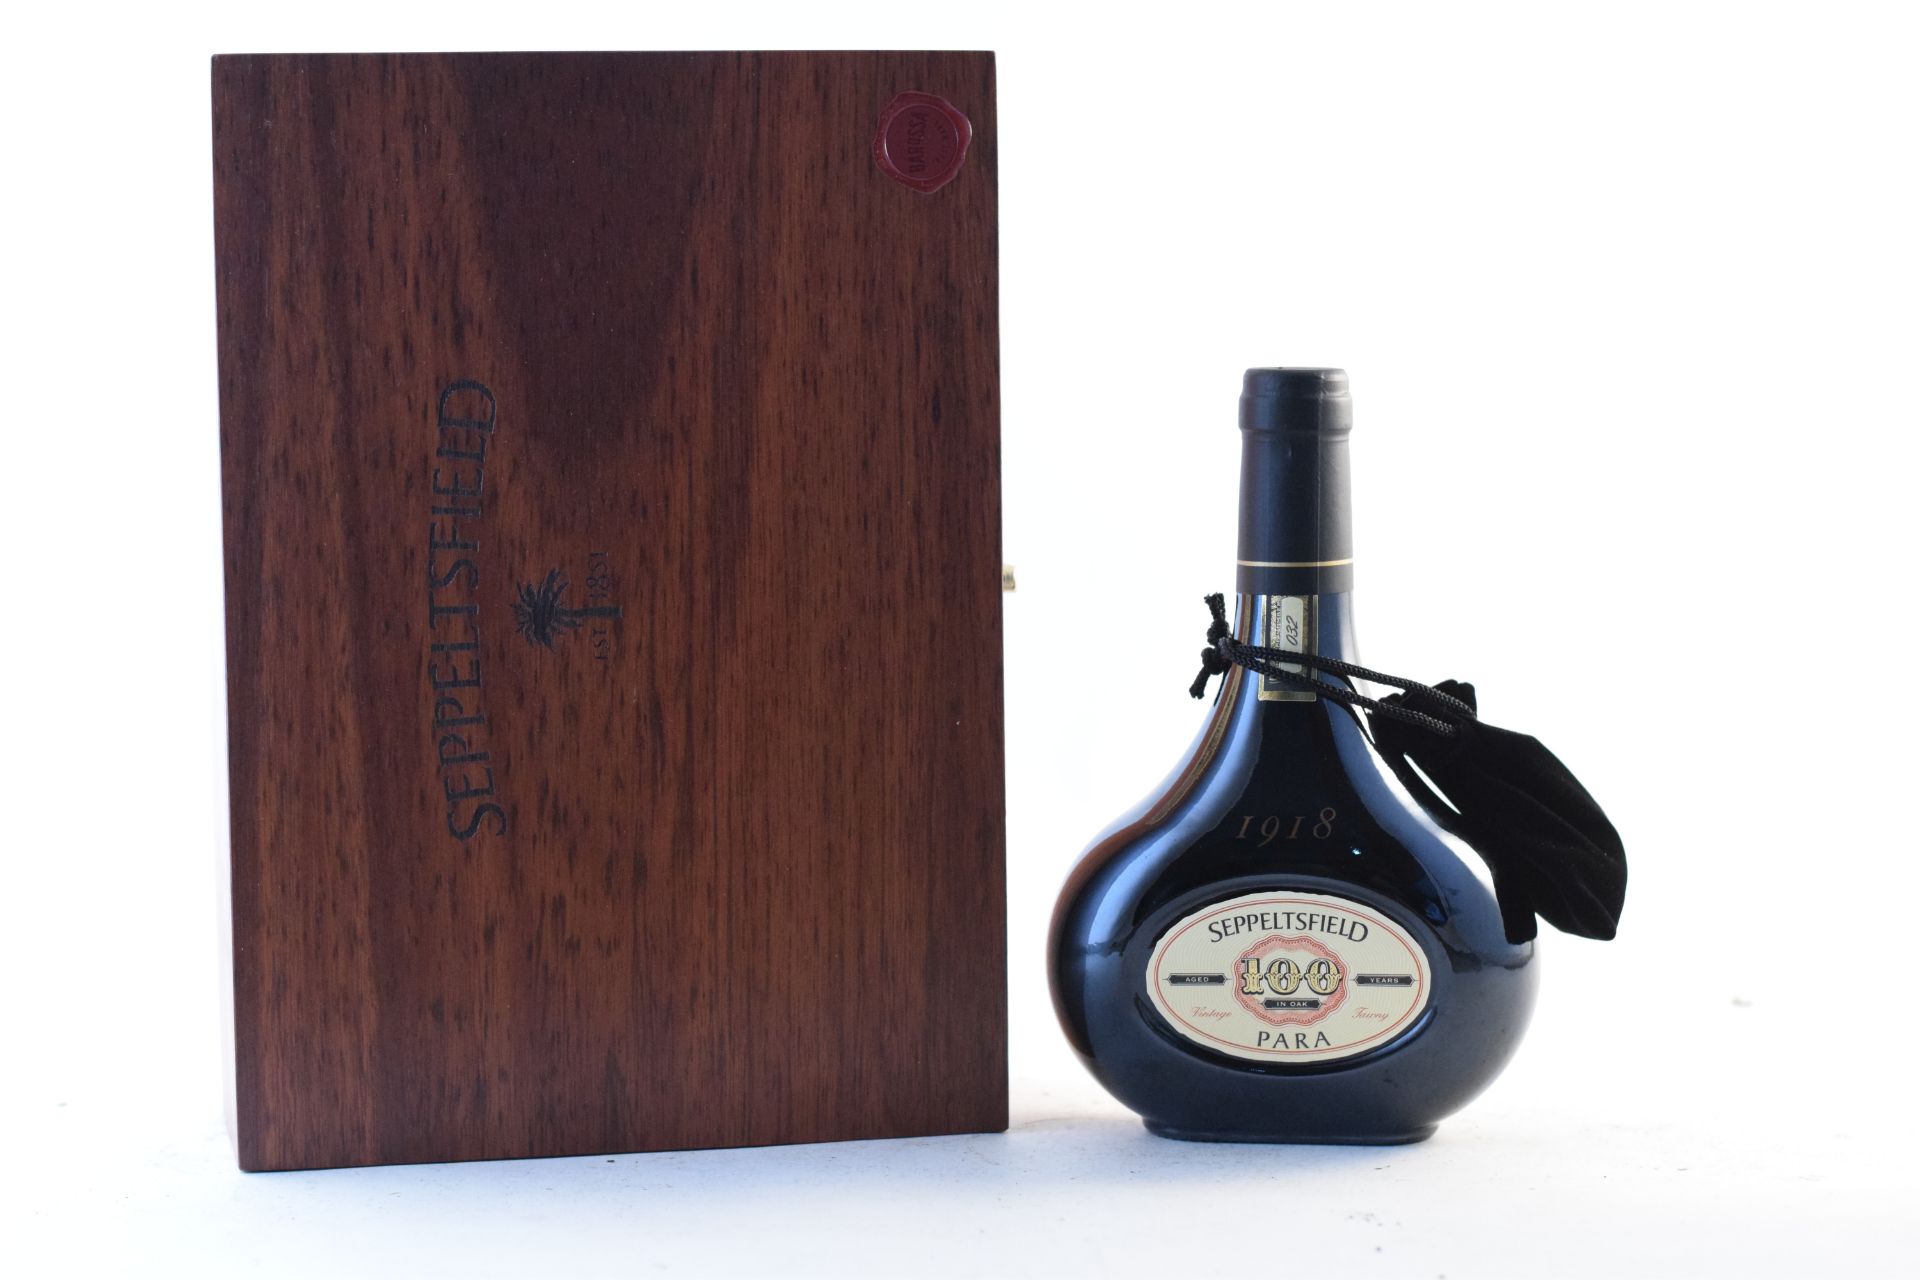 Seppeltsfield Para Vintage Tawny 1918, Barossa Valley (1 half-bottle)